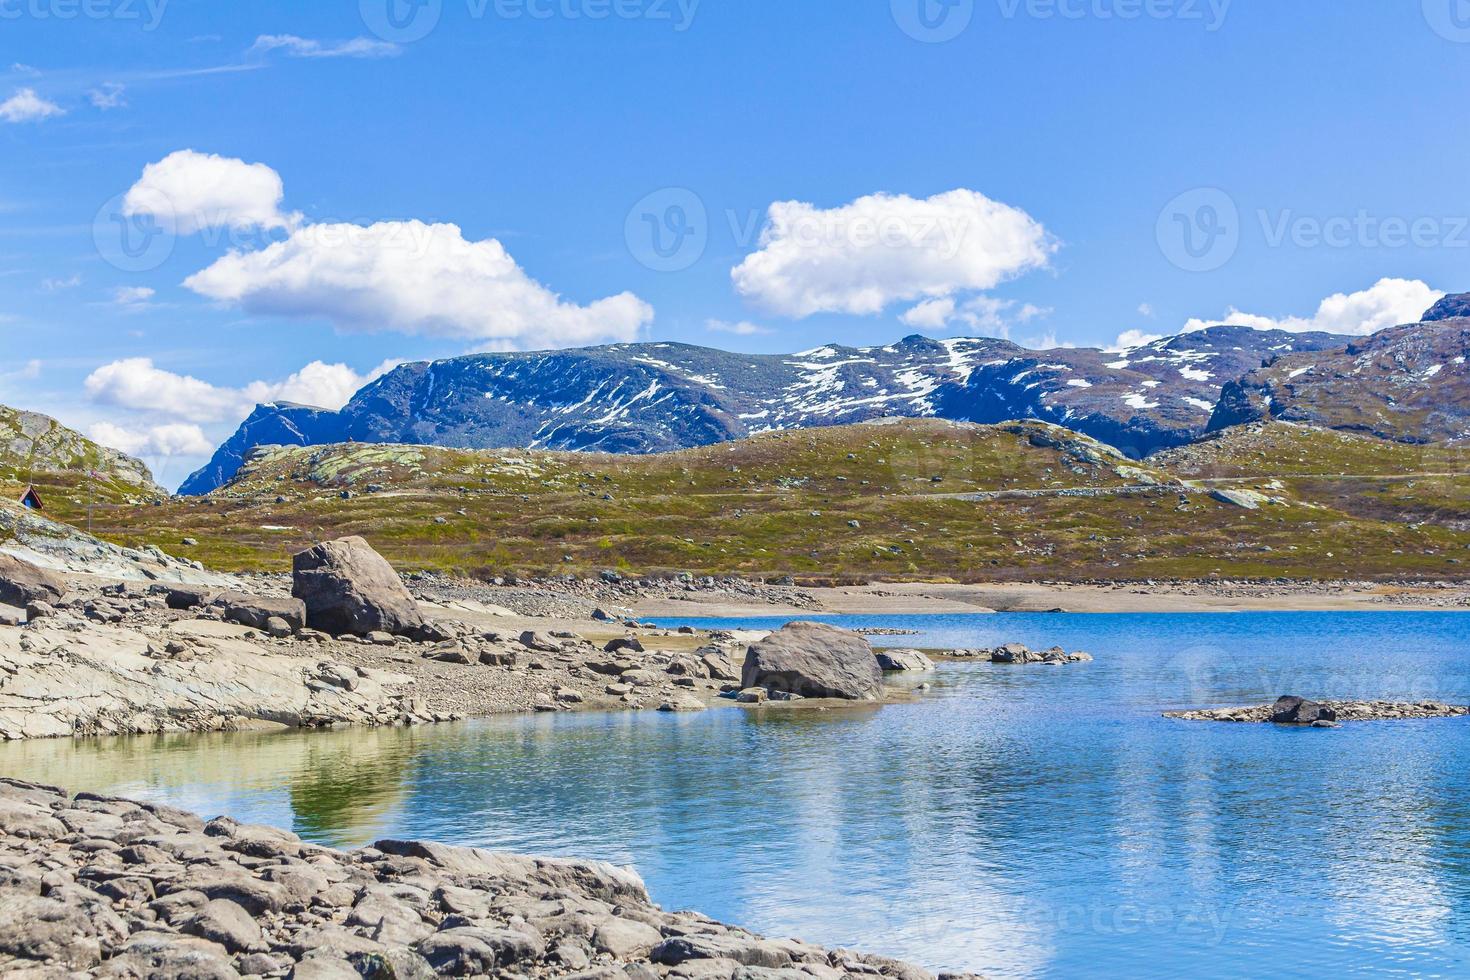 vavatn lago panorama paesaggio massi montagne hemsedal norvegia. foto